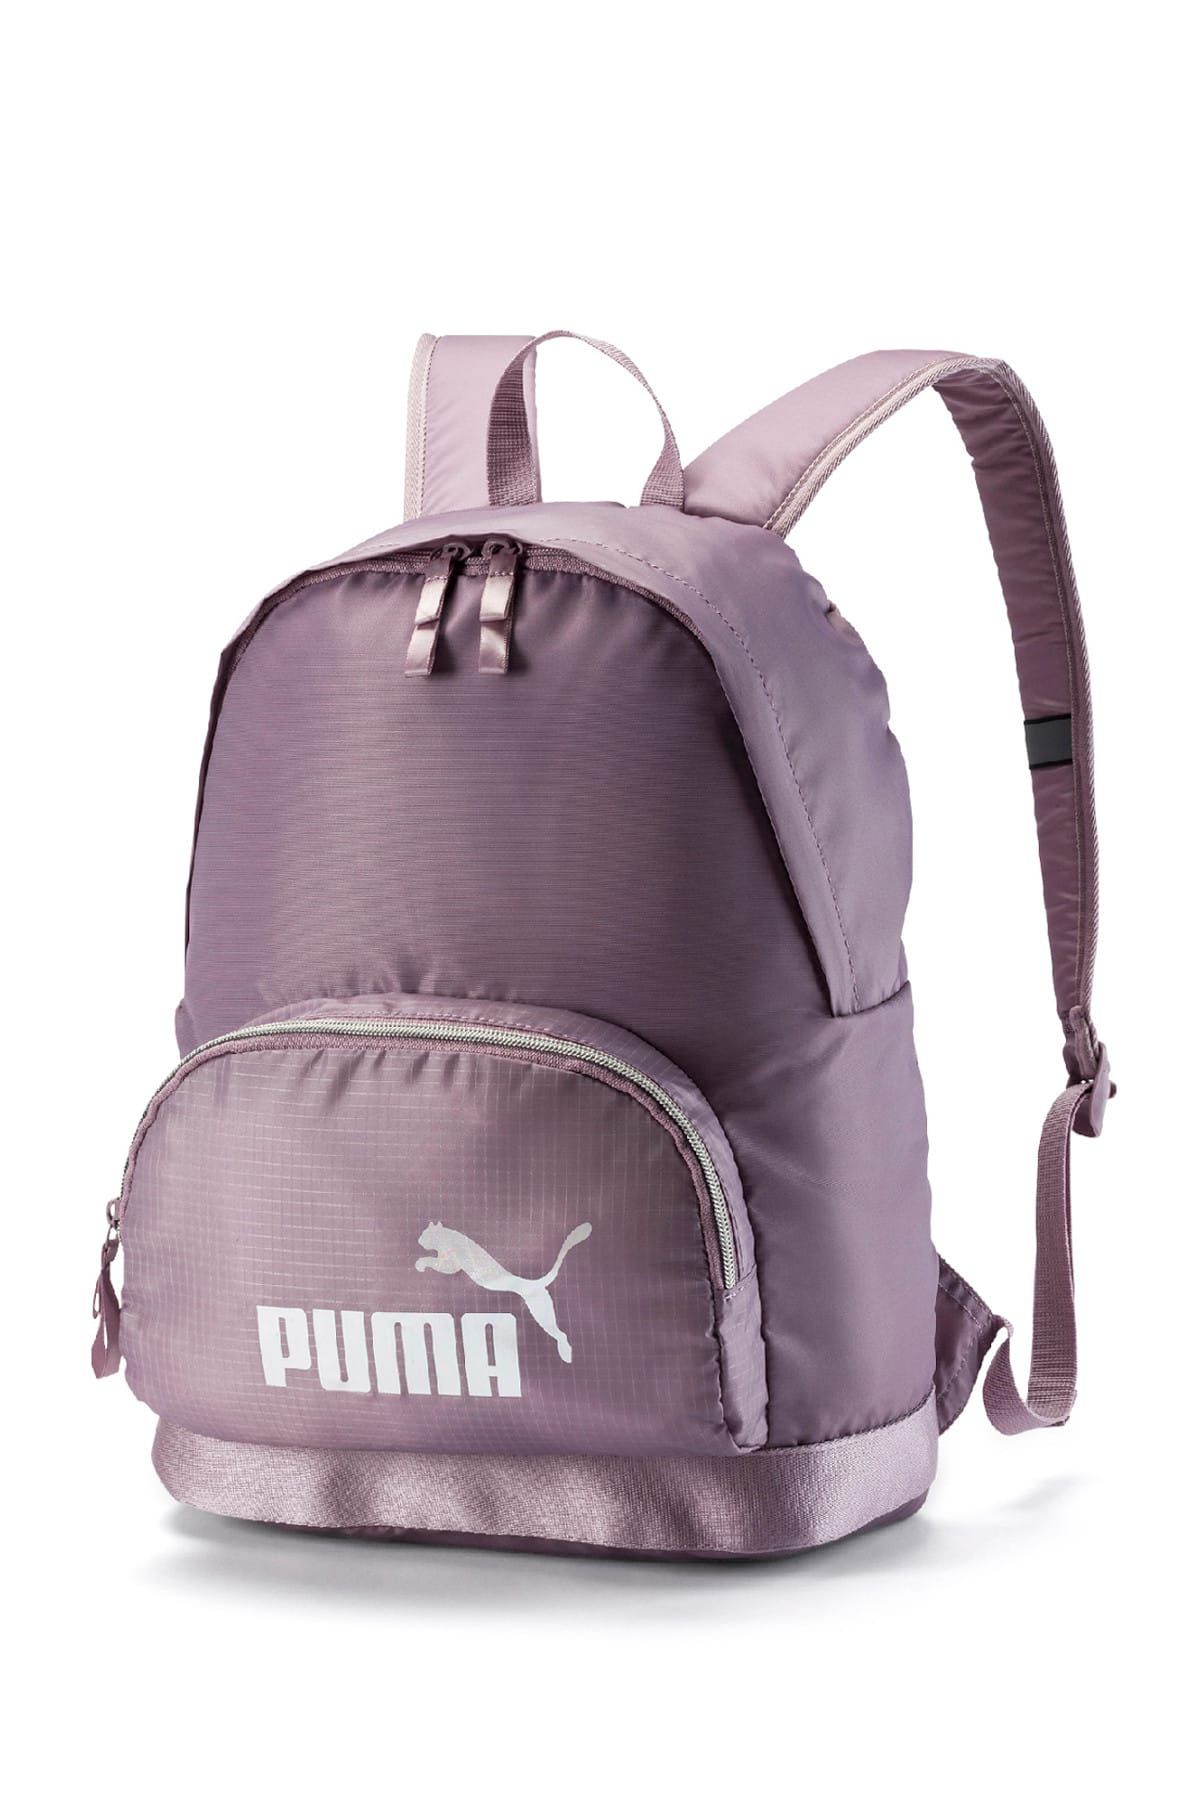 Puma Kadın Sırt Çantası - WMN Core Seasonal Backpack - 07571602